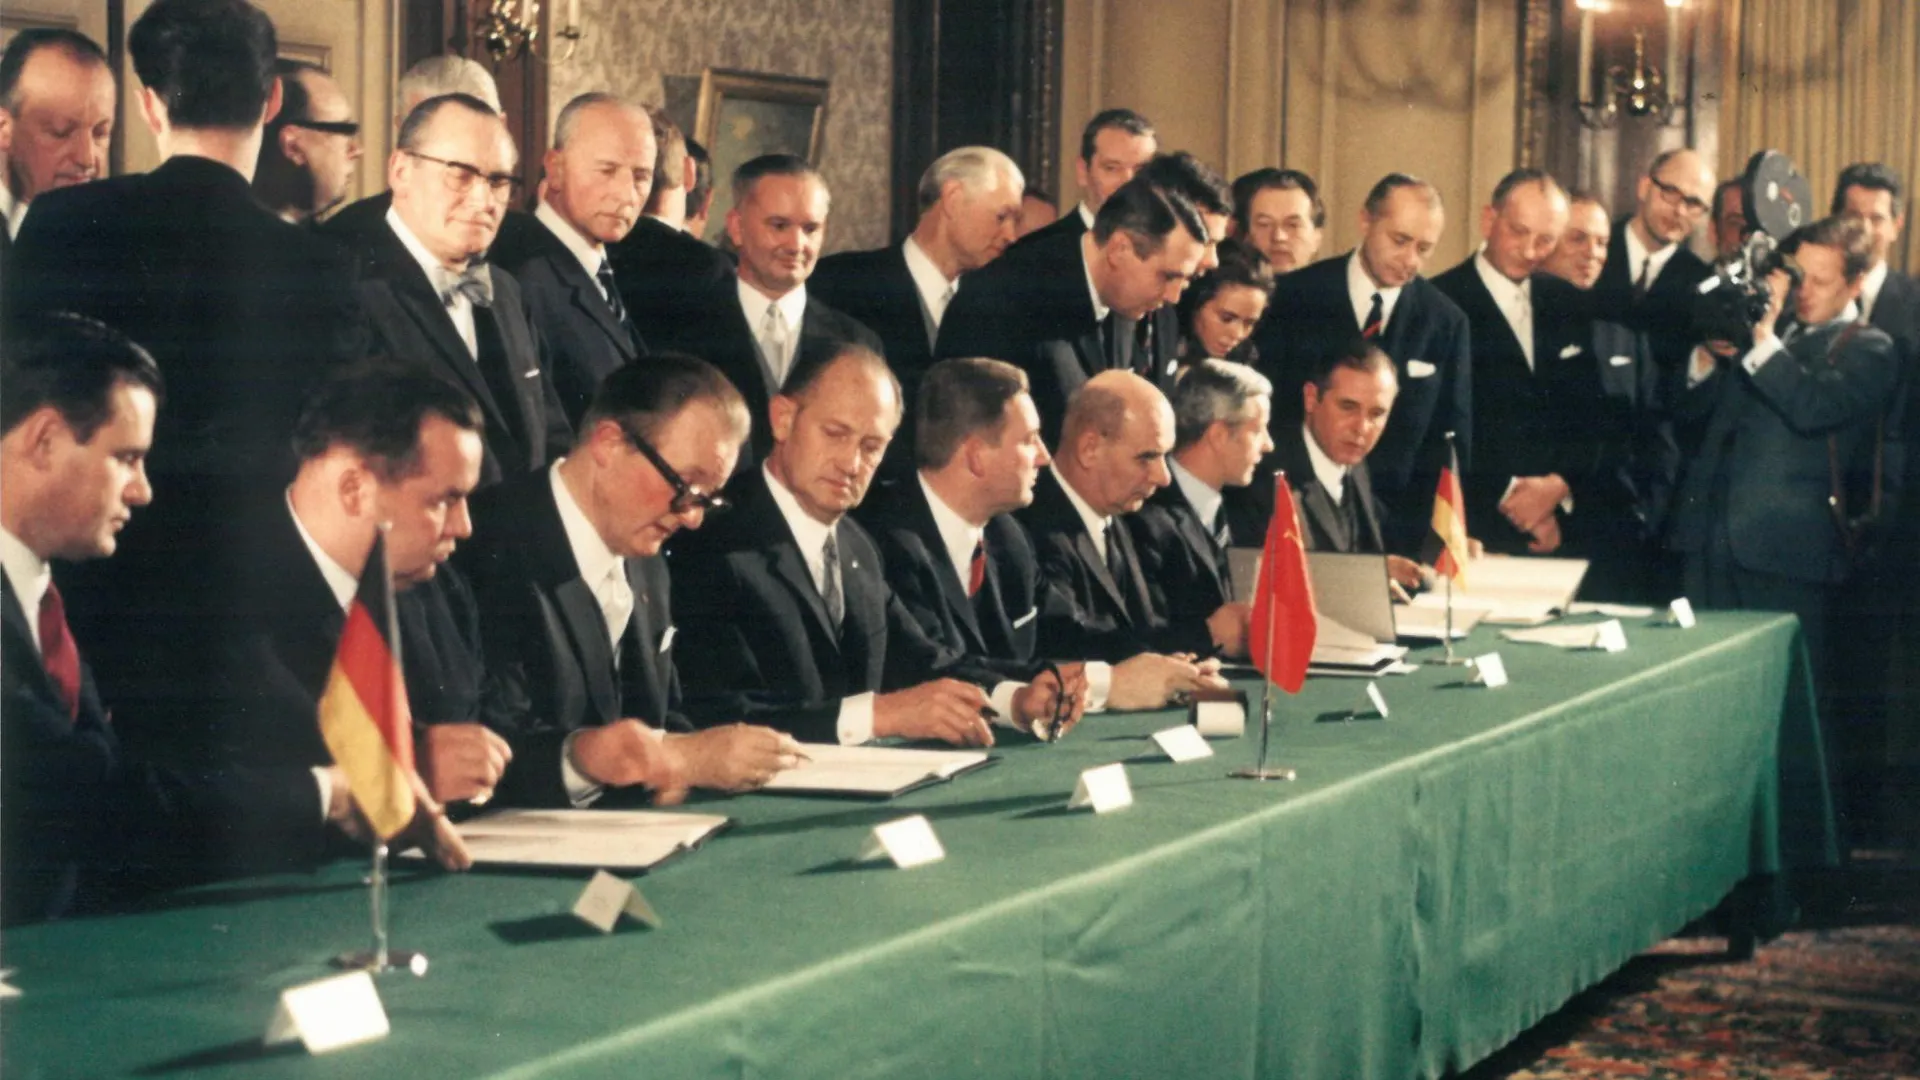 Подписание первого контракта на поставки природного газа из СССР в ФРГ 1 февраля 1970 года, город Эссен (Германия), конференц-зал отеля «Кайзерхоф»